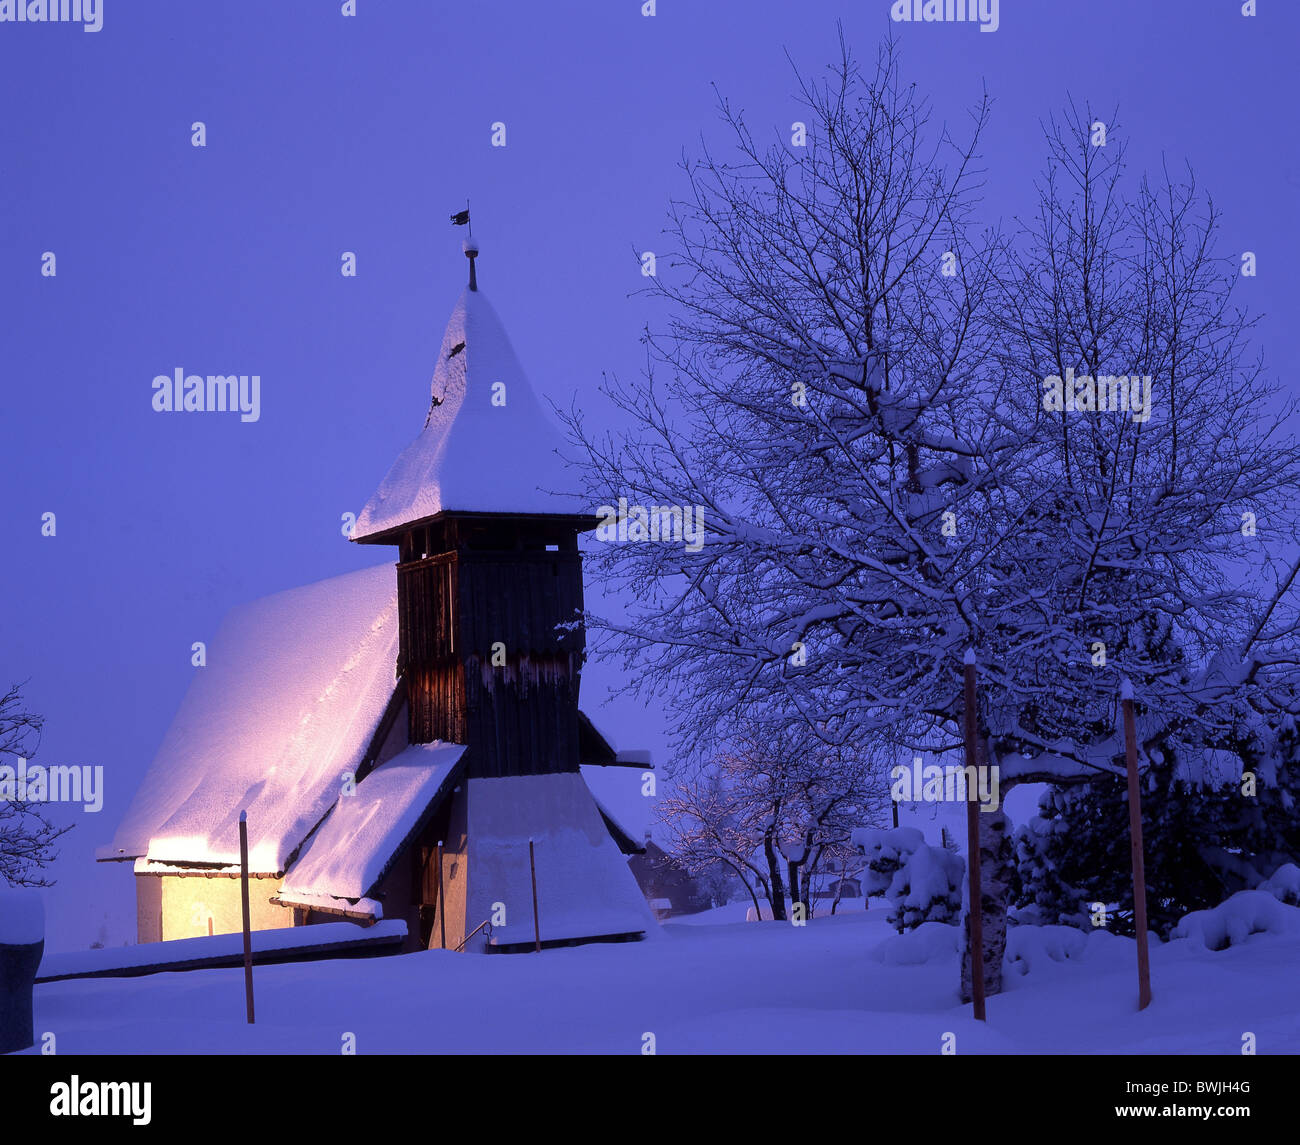 Inverno montagna Arosa chiesa cappella di montagna cappella di notte illuminata di notte snowbound coperte di neve snowy Foto Stock